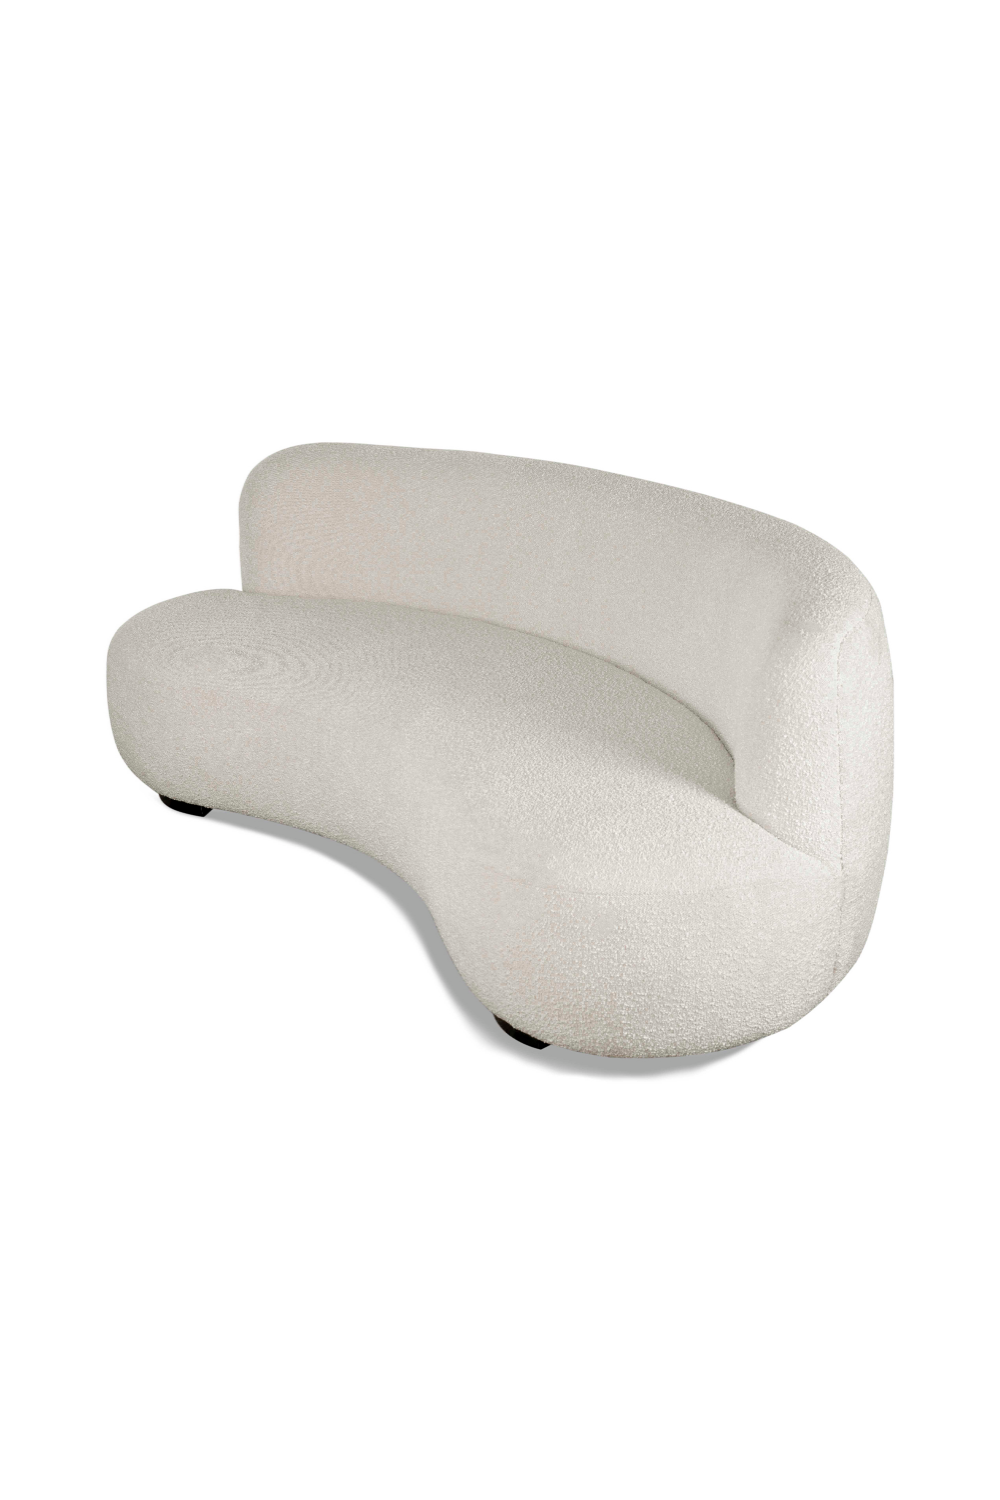 Contemporary Curved Sofa | Liang & Eimil Polter | Oroa.com